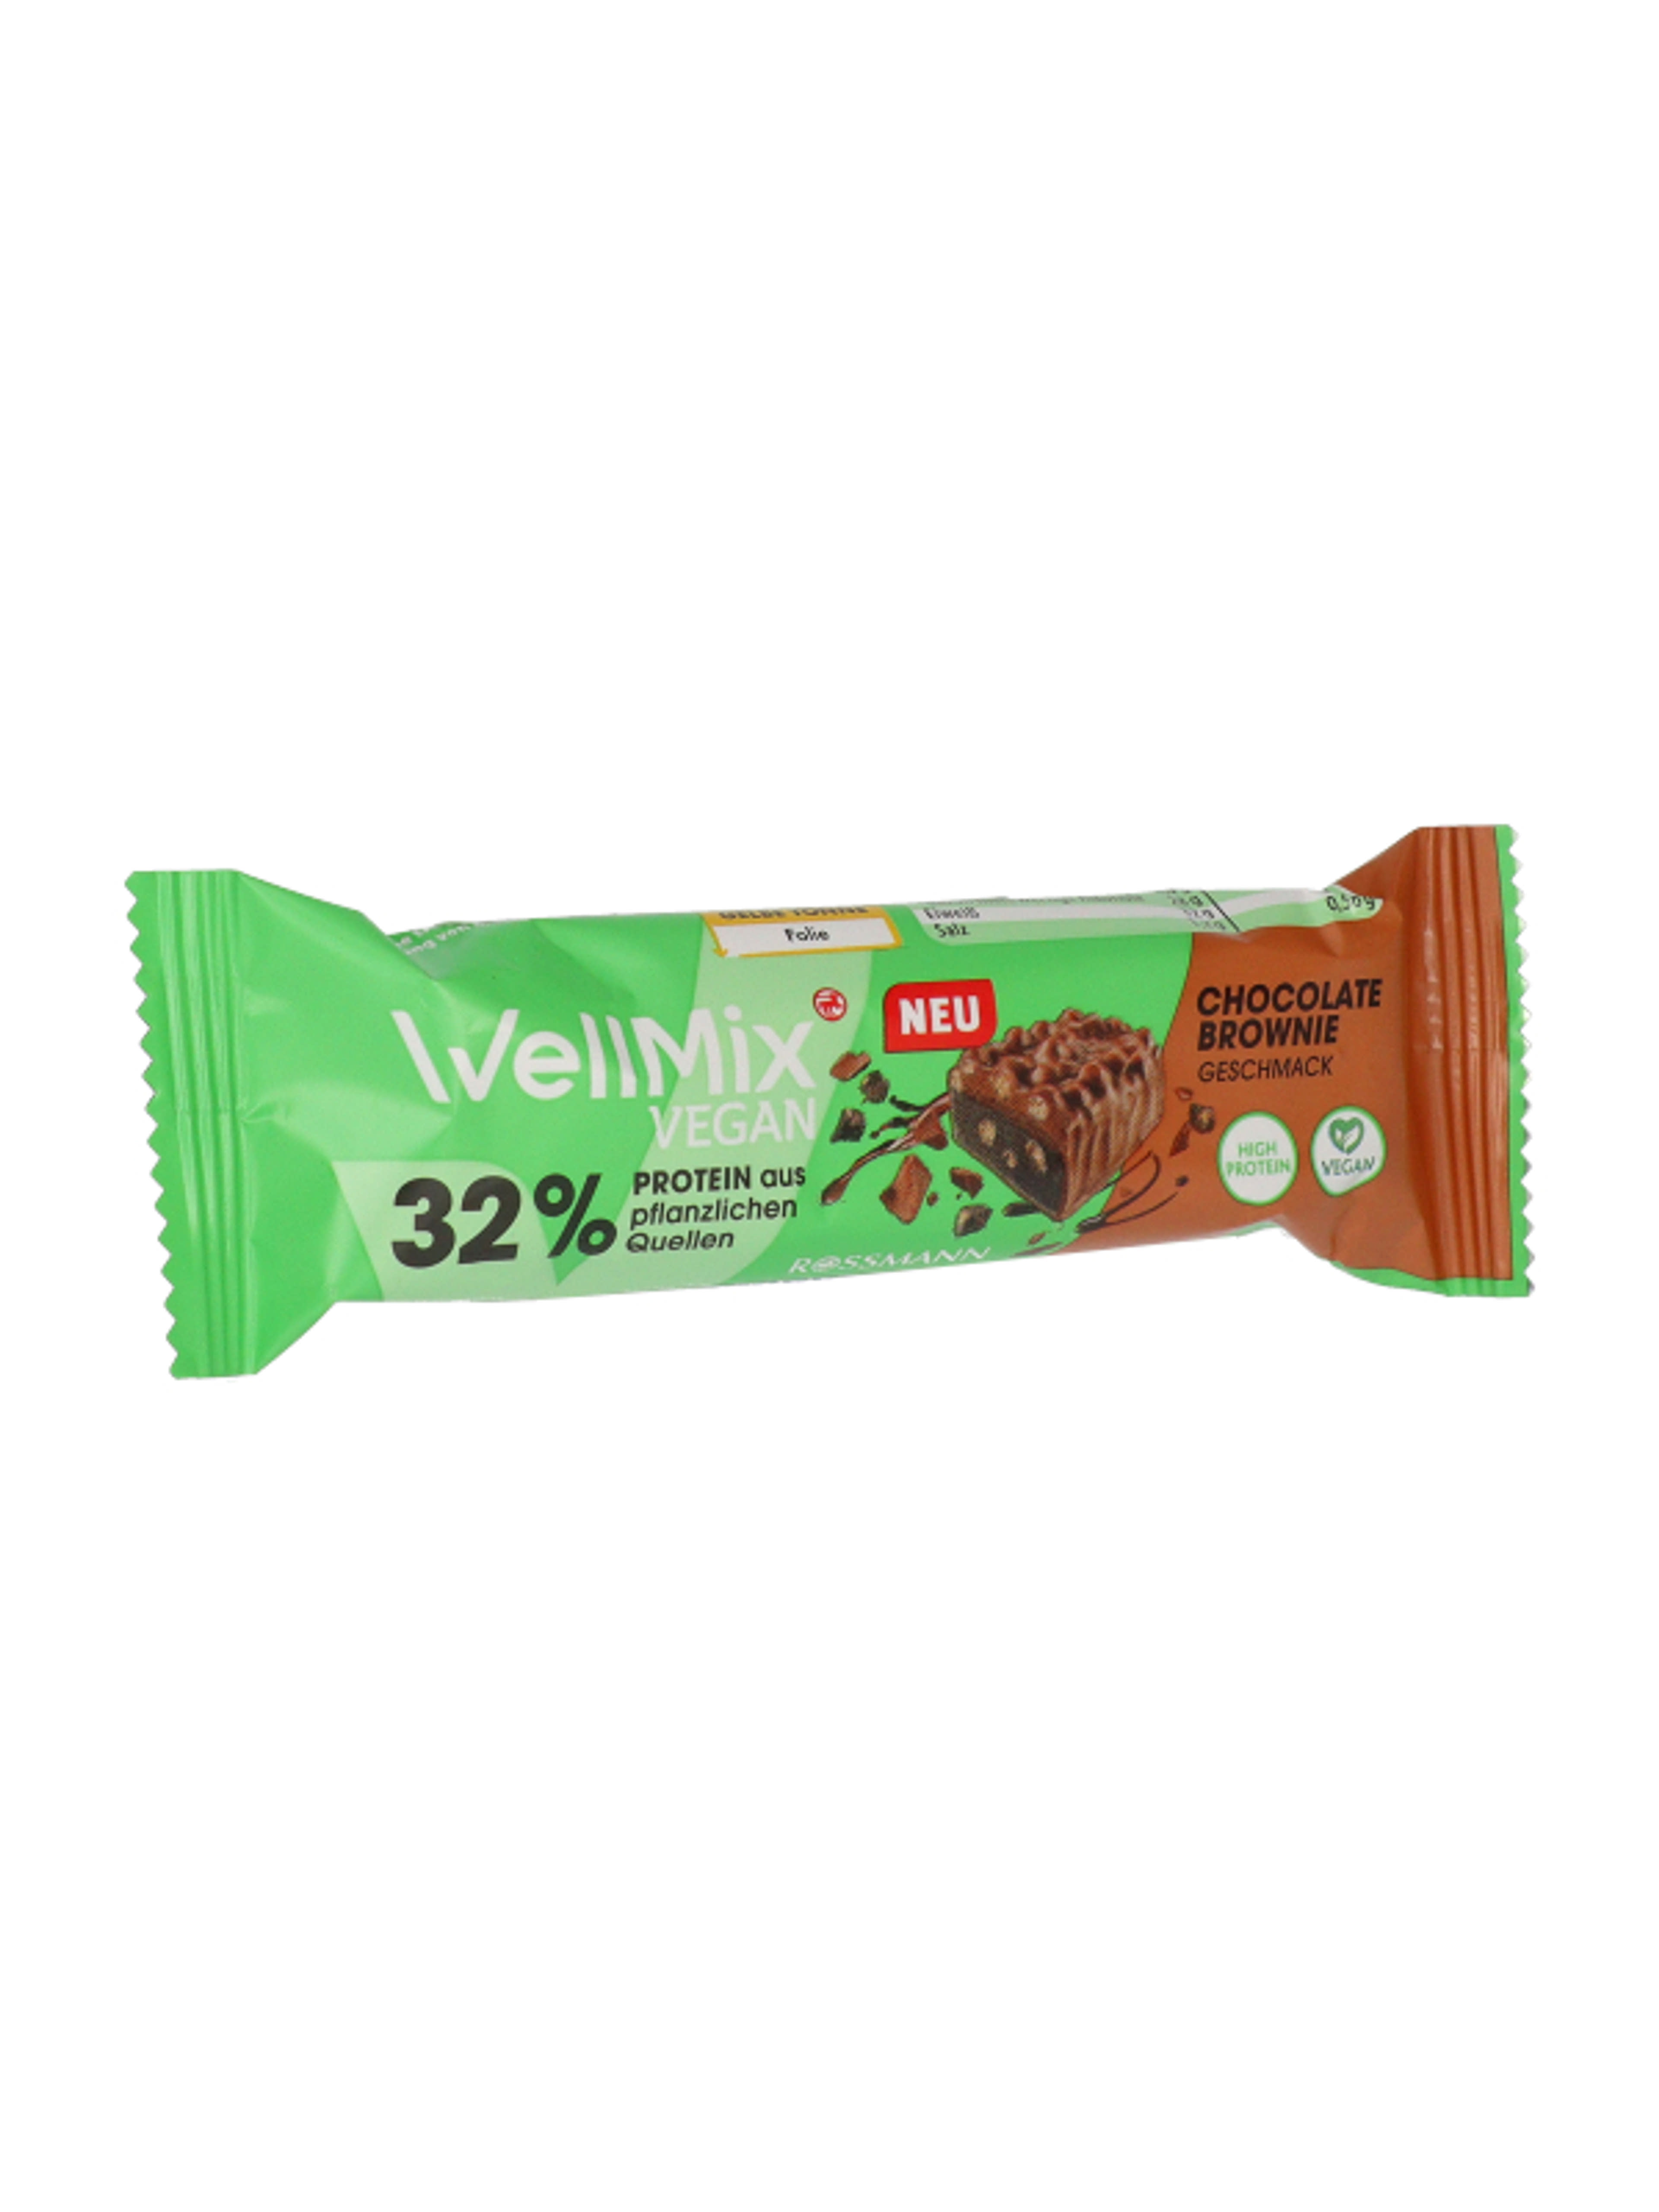 Well Mix 32% vegán protein szelet csokis brownie ízben - 45 g-2